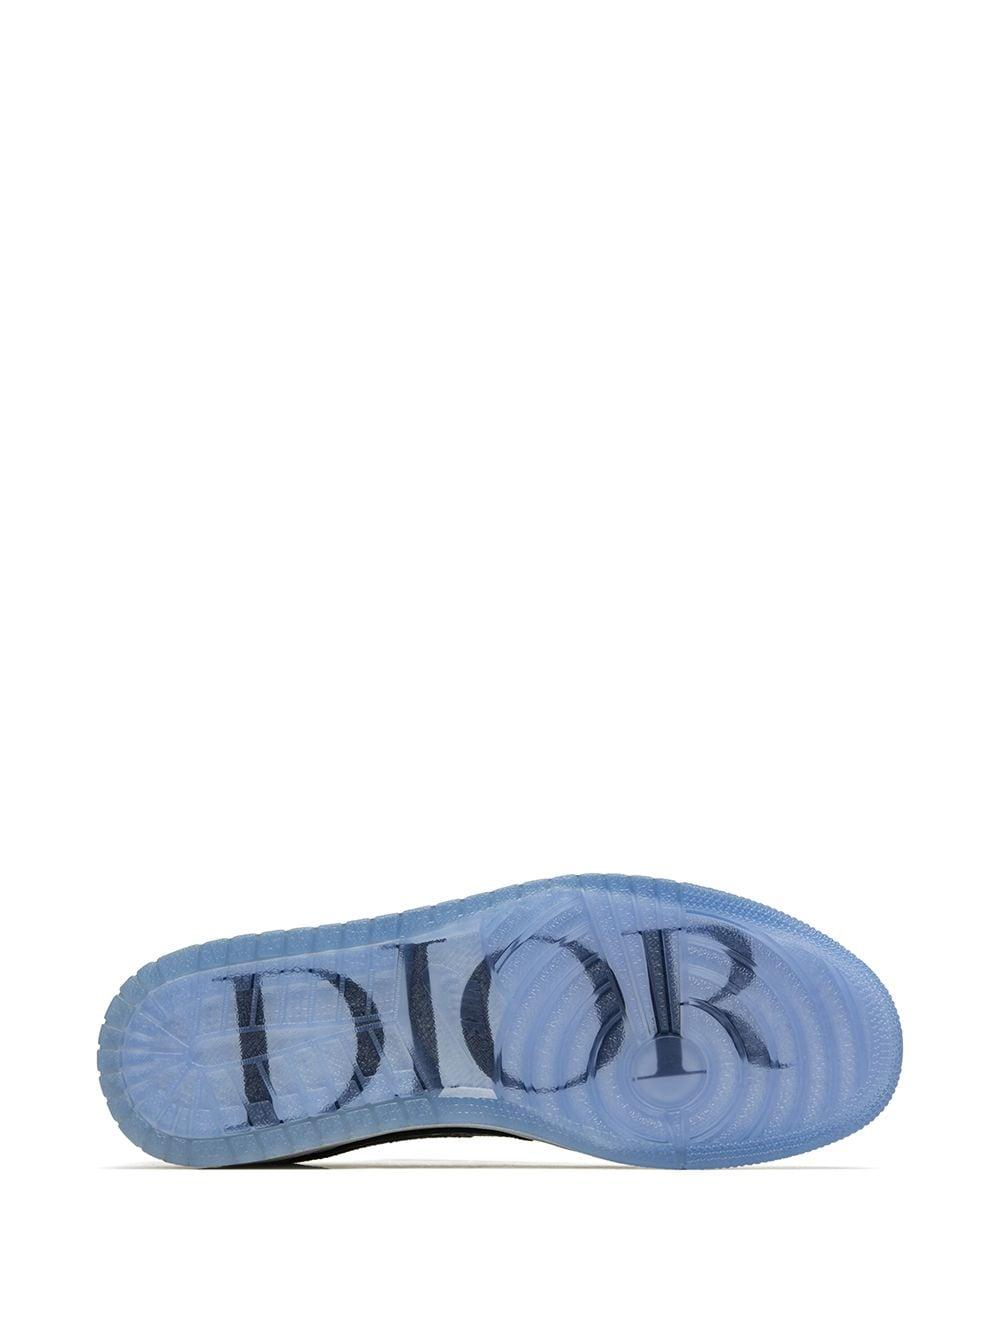 Nike Leder X Dior 'Air 1 Low' Sneakers in Grau für Herren - Lyst